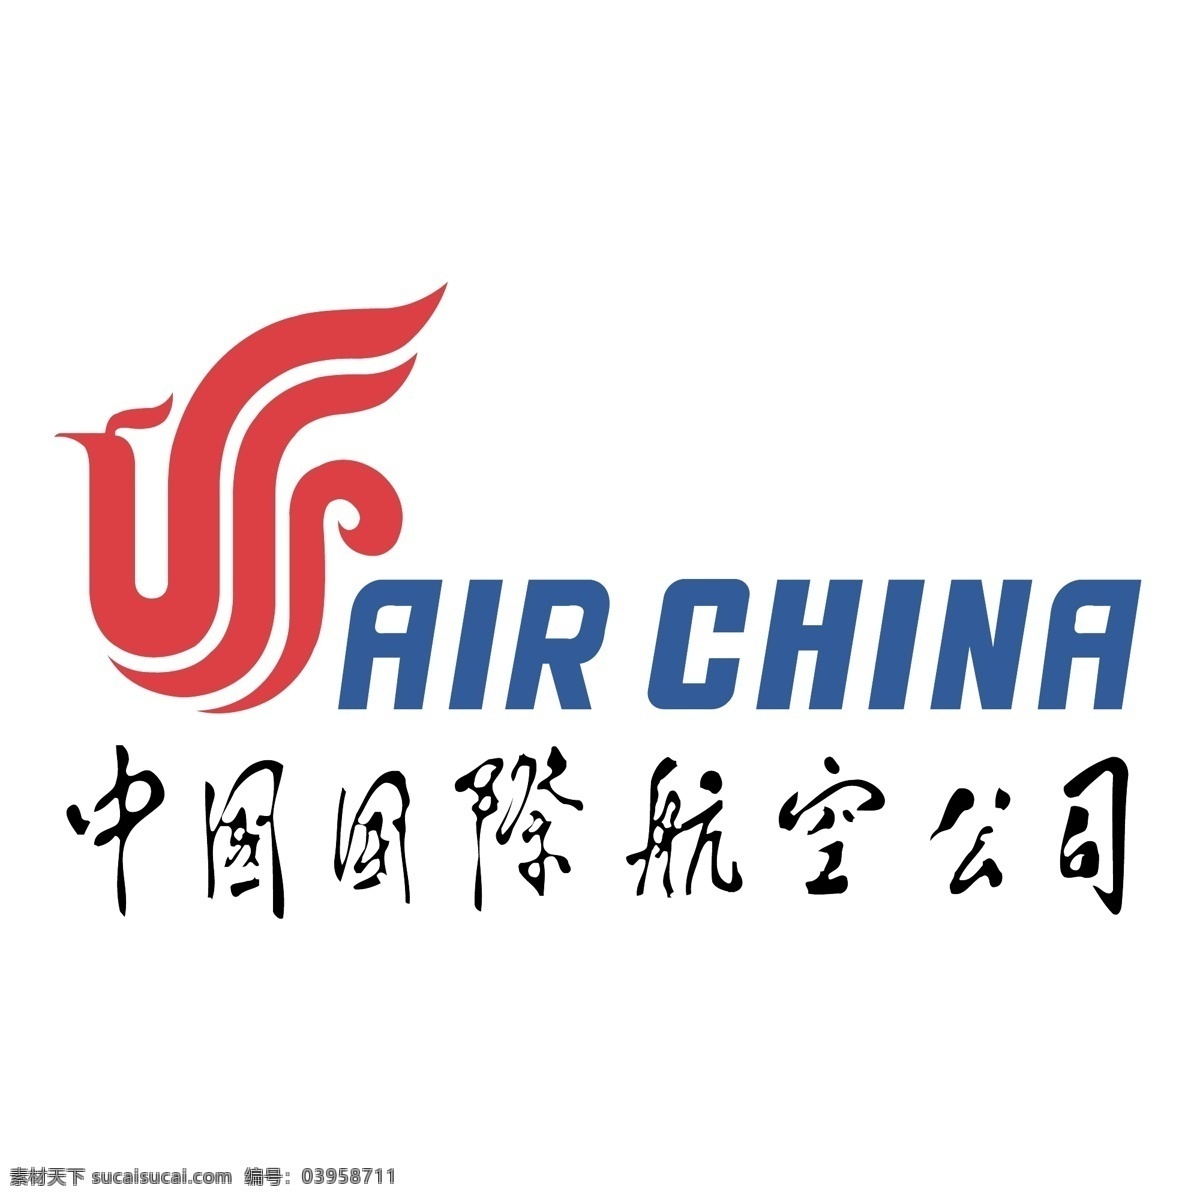 航空公司 中国国际航空公司 其他矢量 矢量素材 矢量图库